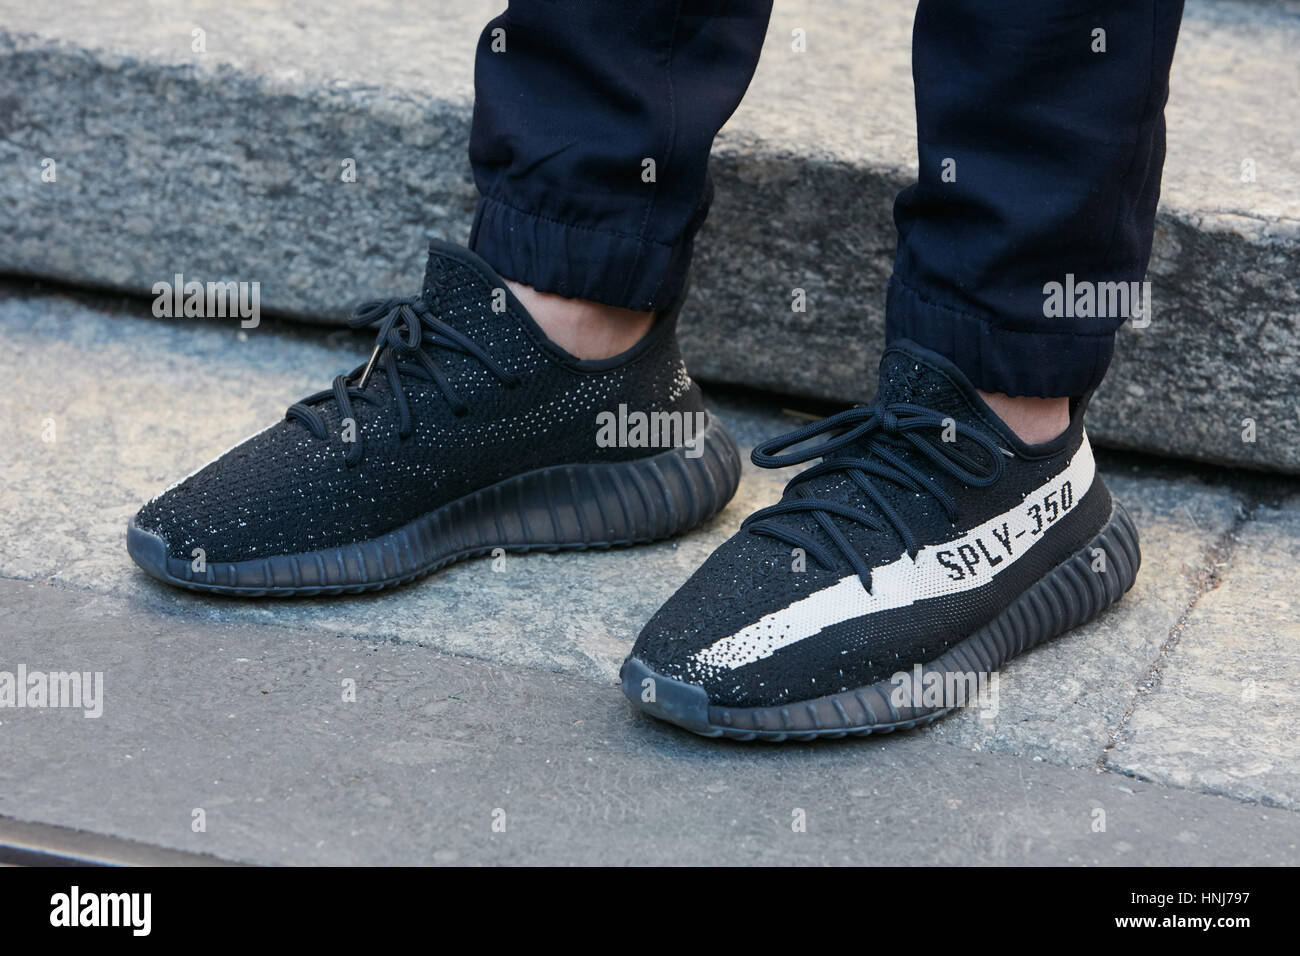 Yeezy shoes -Fotos und -Bildmaterial in hoher Auflösung – Alamy